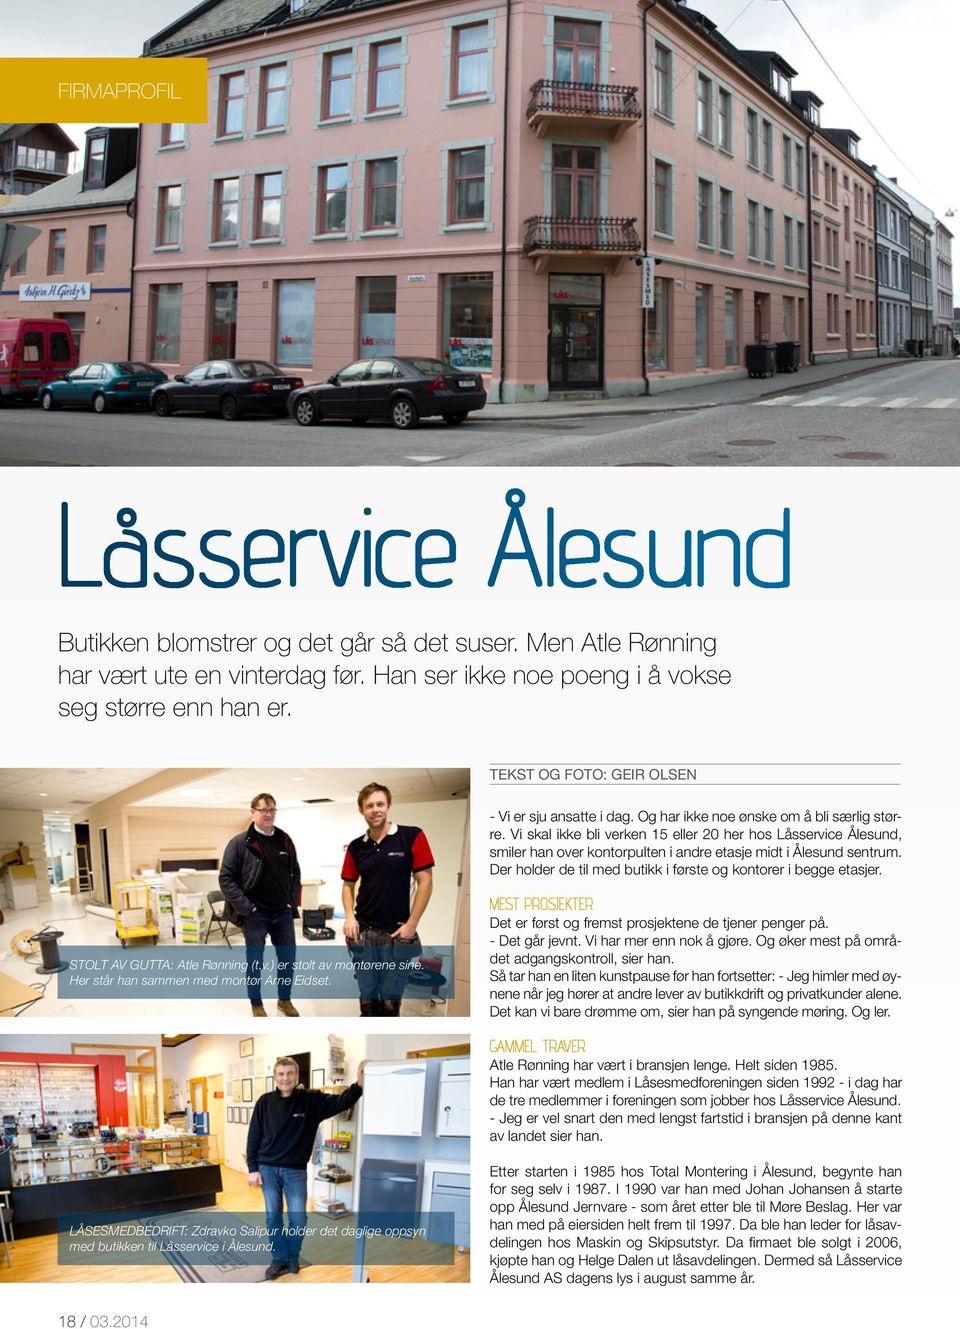 Vi skal ikke bli verken 15 eller 20 her hos Låsservice Ålesund, smiler han over kontorpulten i andre etasje midt i Ålesund sentrum. Der holder de til med butikk i første og kontorer i begge etasjer.